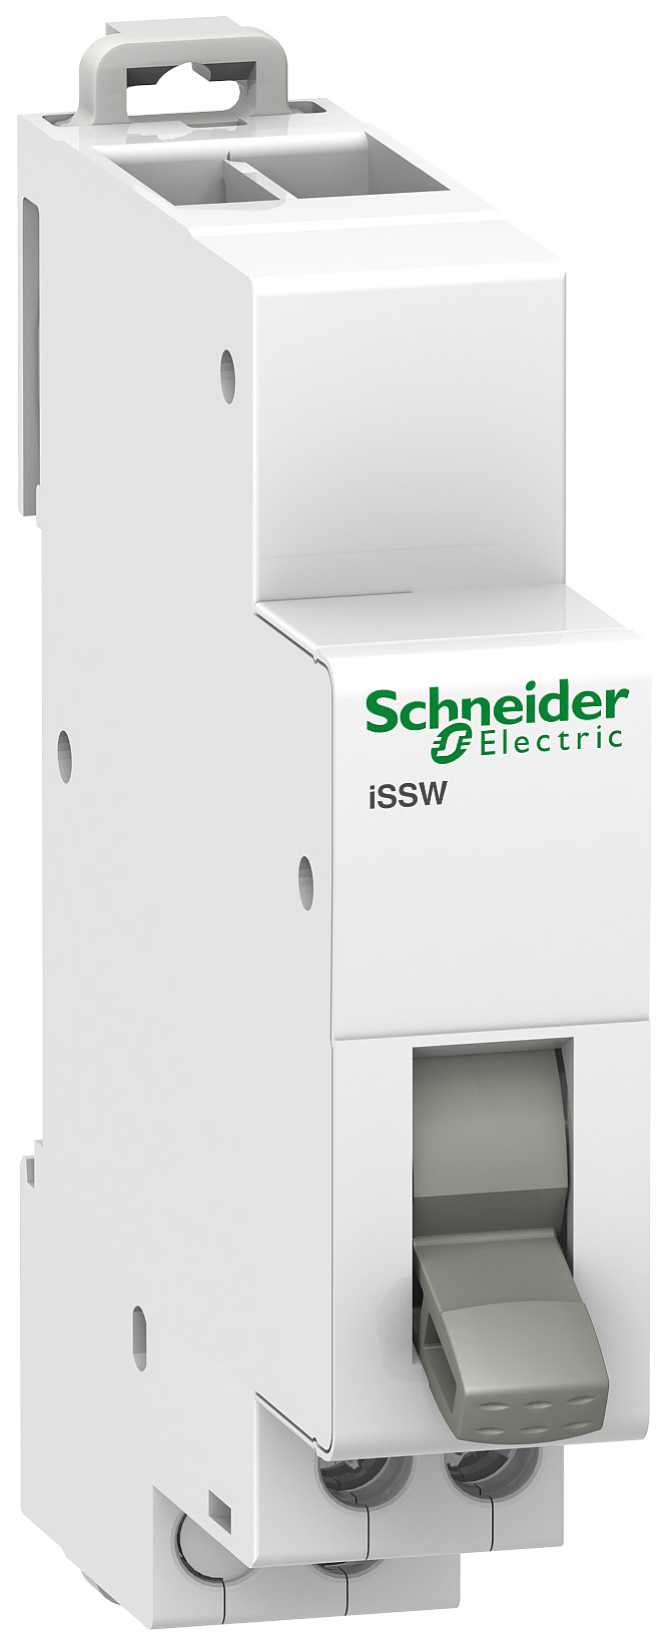 Schneider Electric - A9E18073 Vender iSSW 20-1 3 Pos.